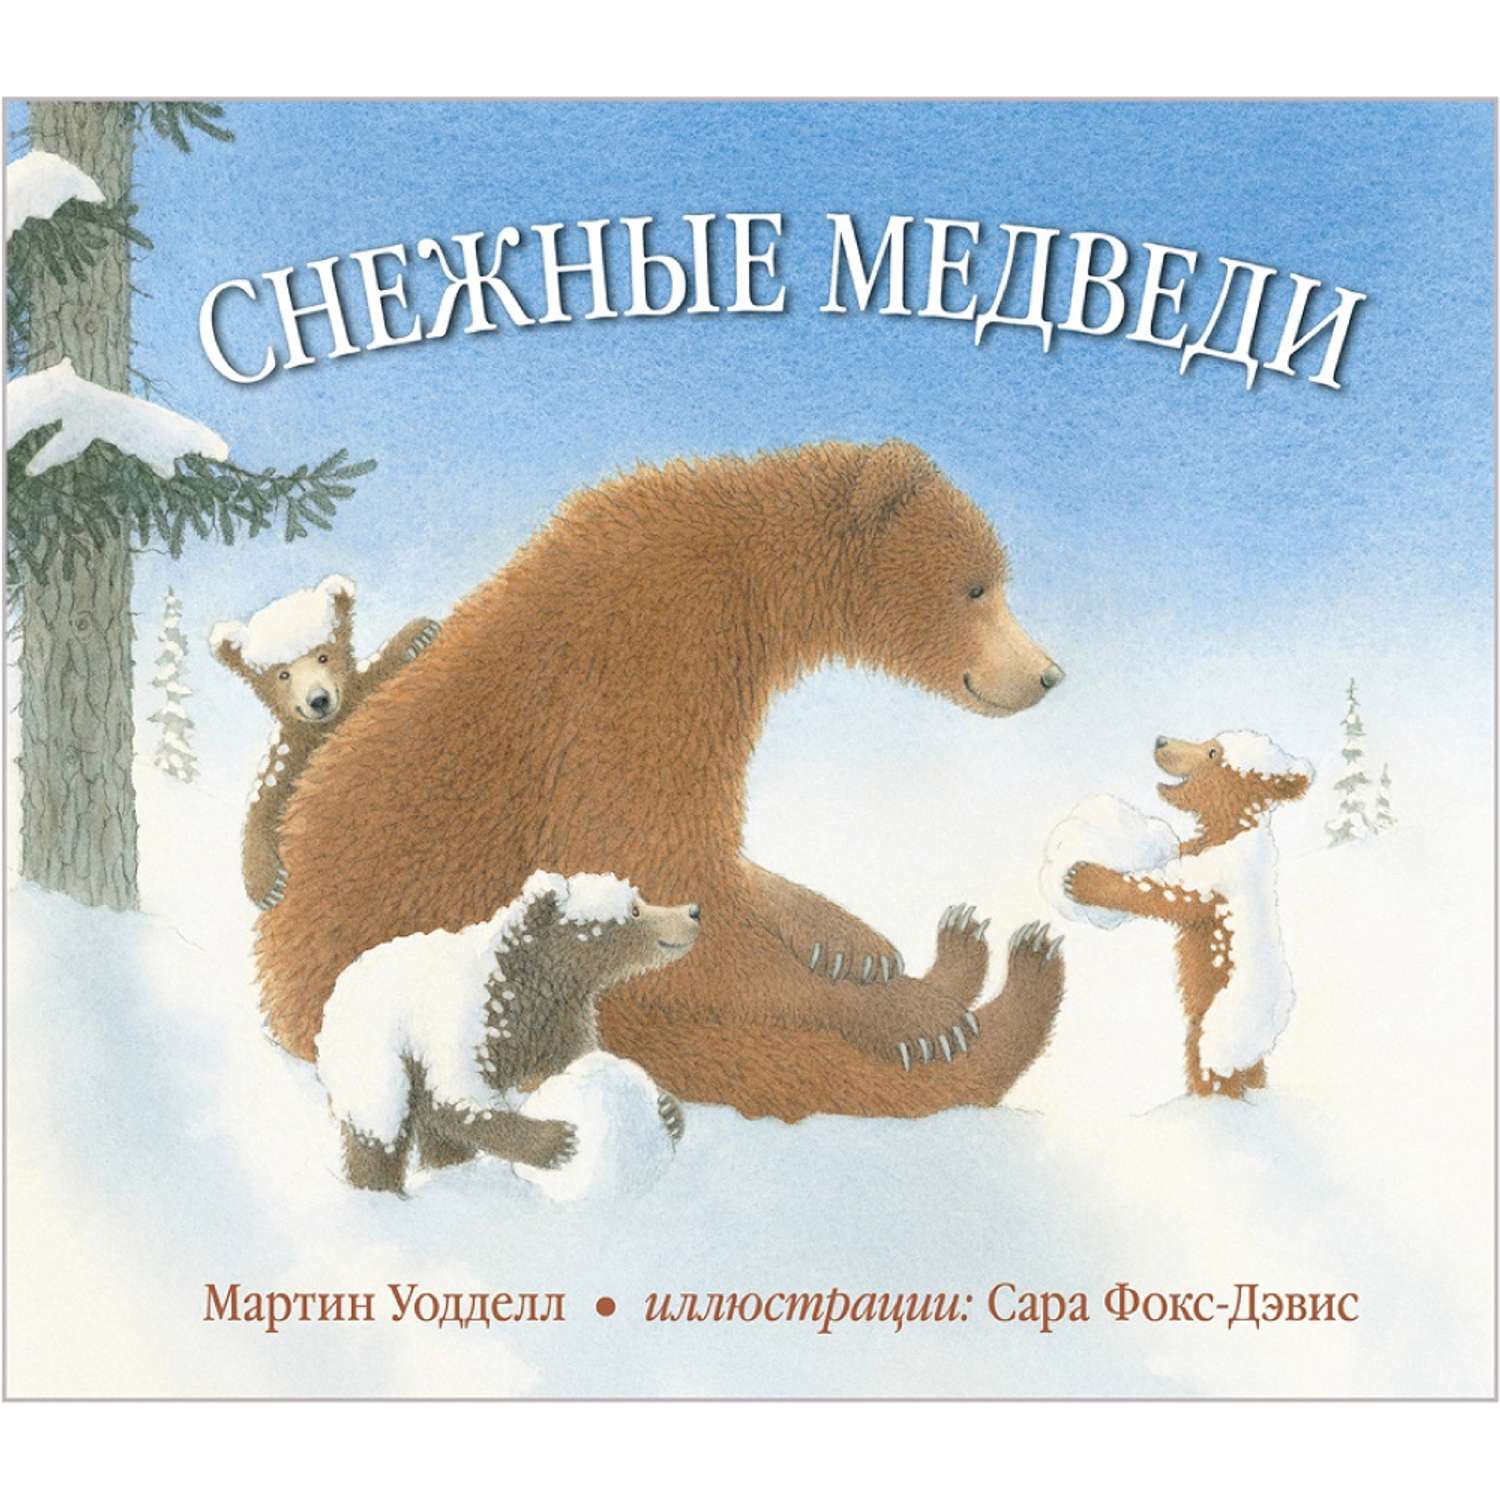 Игра мишки снежные мишки. Снежный мишка книжка. Снежный Медвежонок книга. Уодделл м. "снежные медведи". Иллюстрации белого медведя из книг.